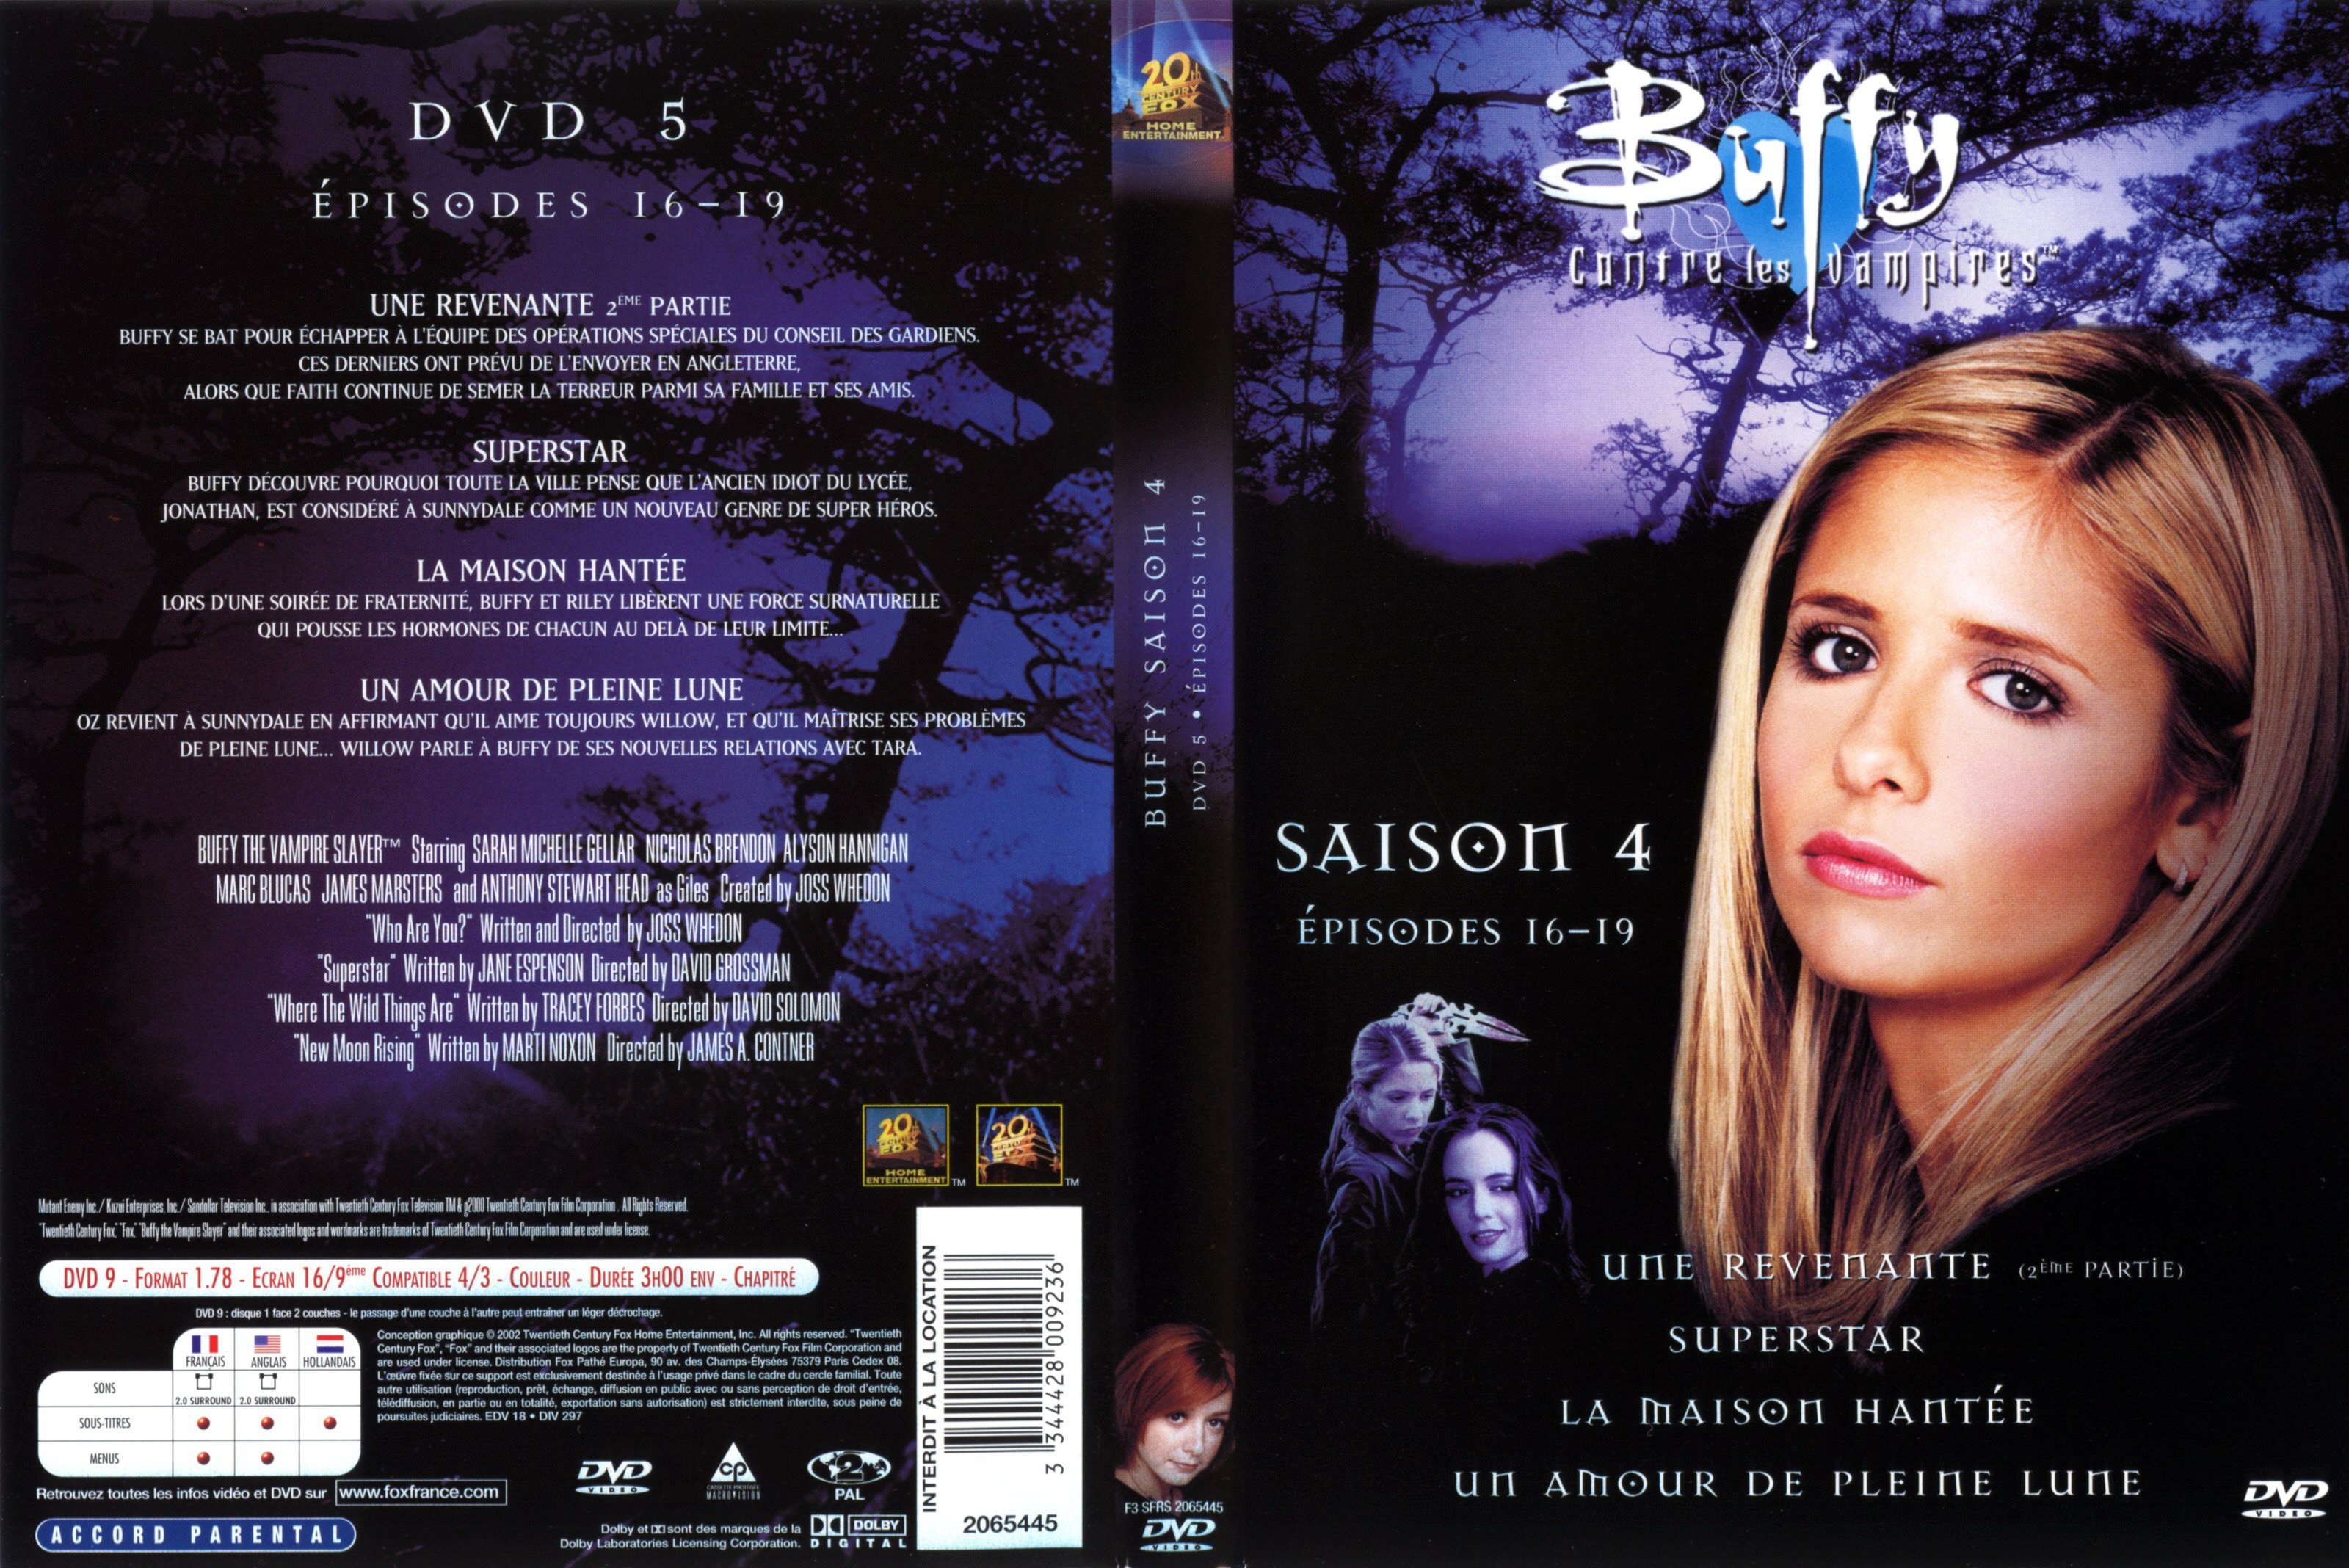 Jaquette DVD Buffy contre les vampires Saison 4 DVD 5